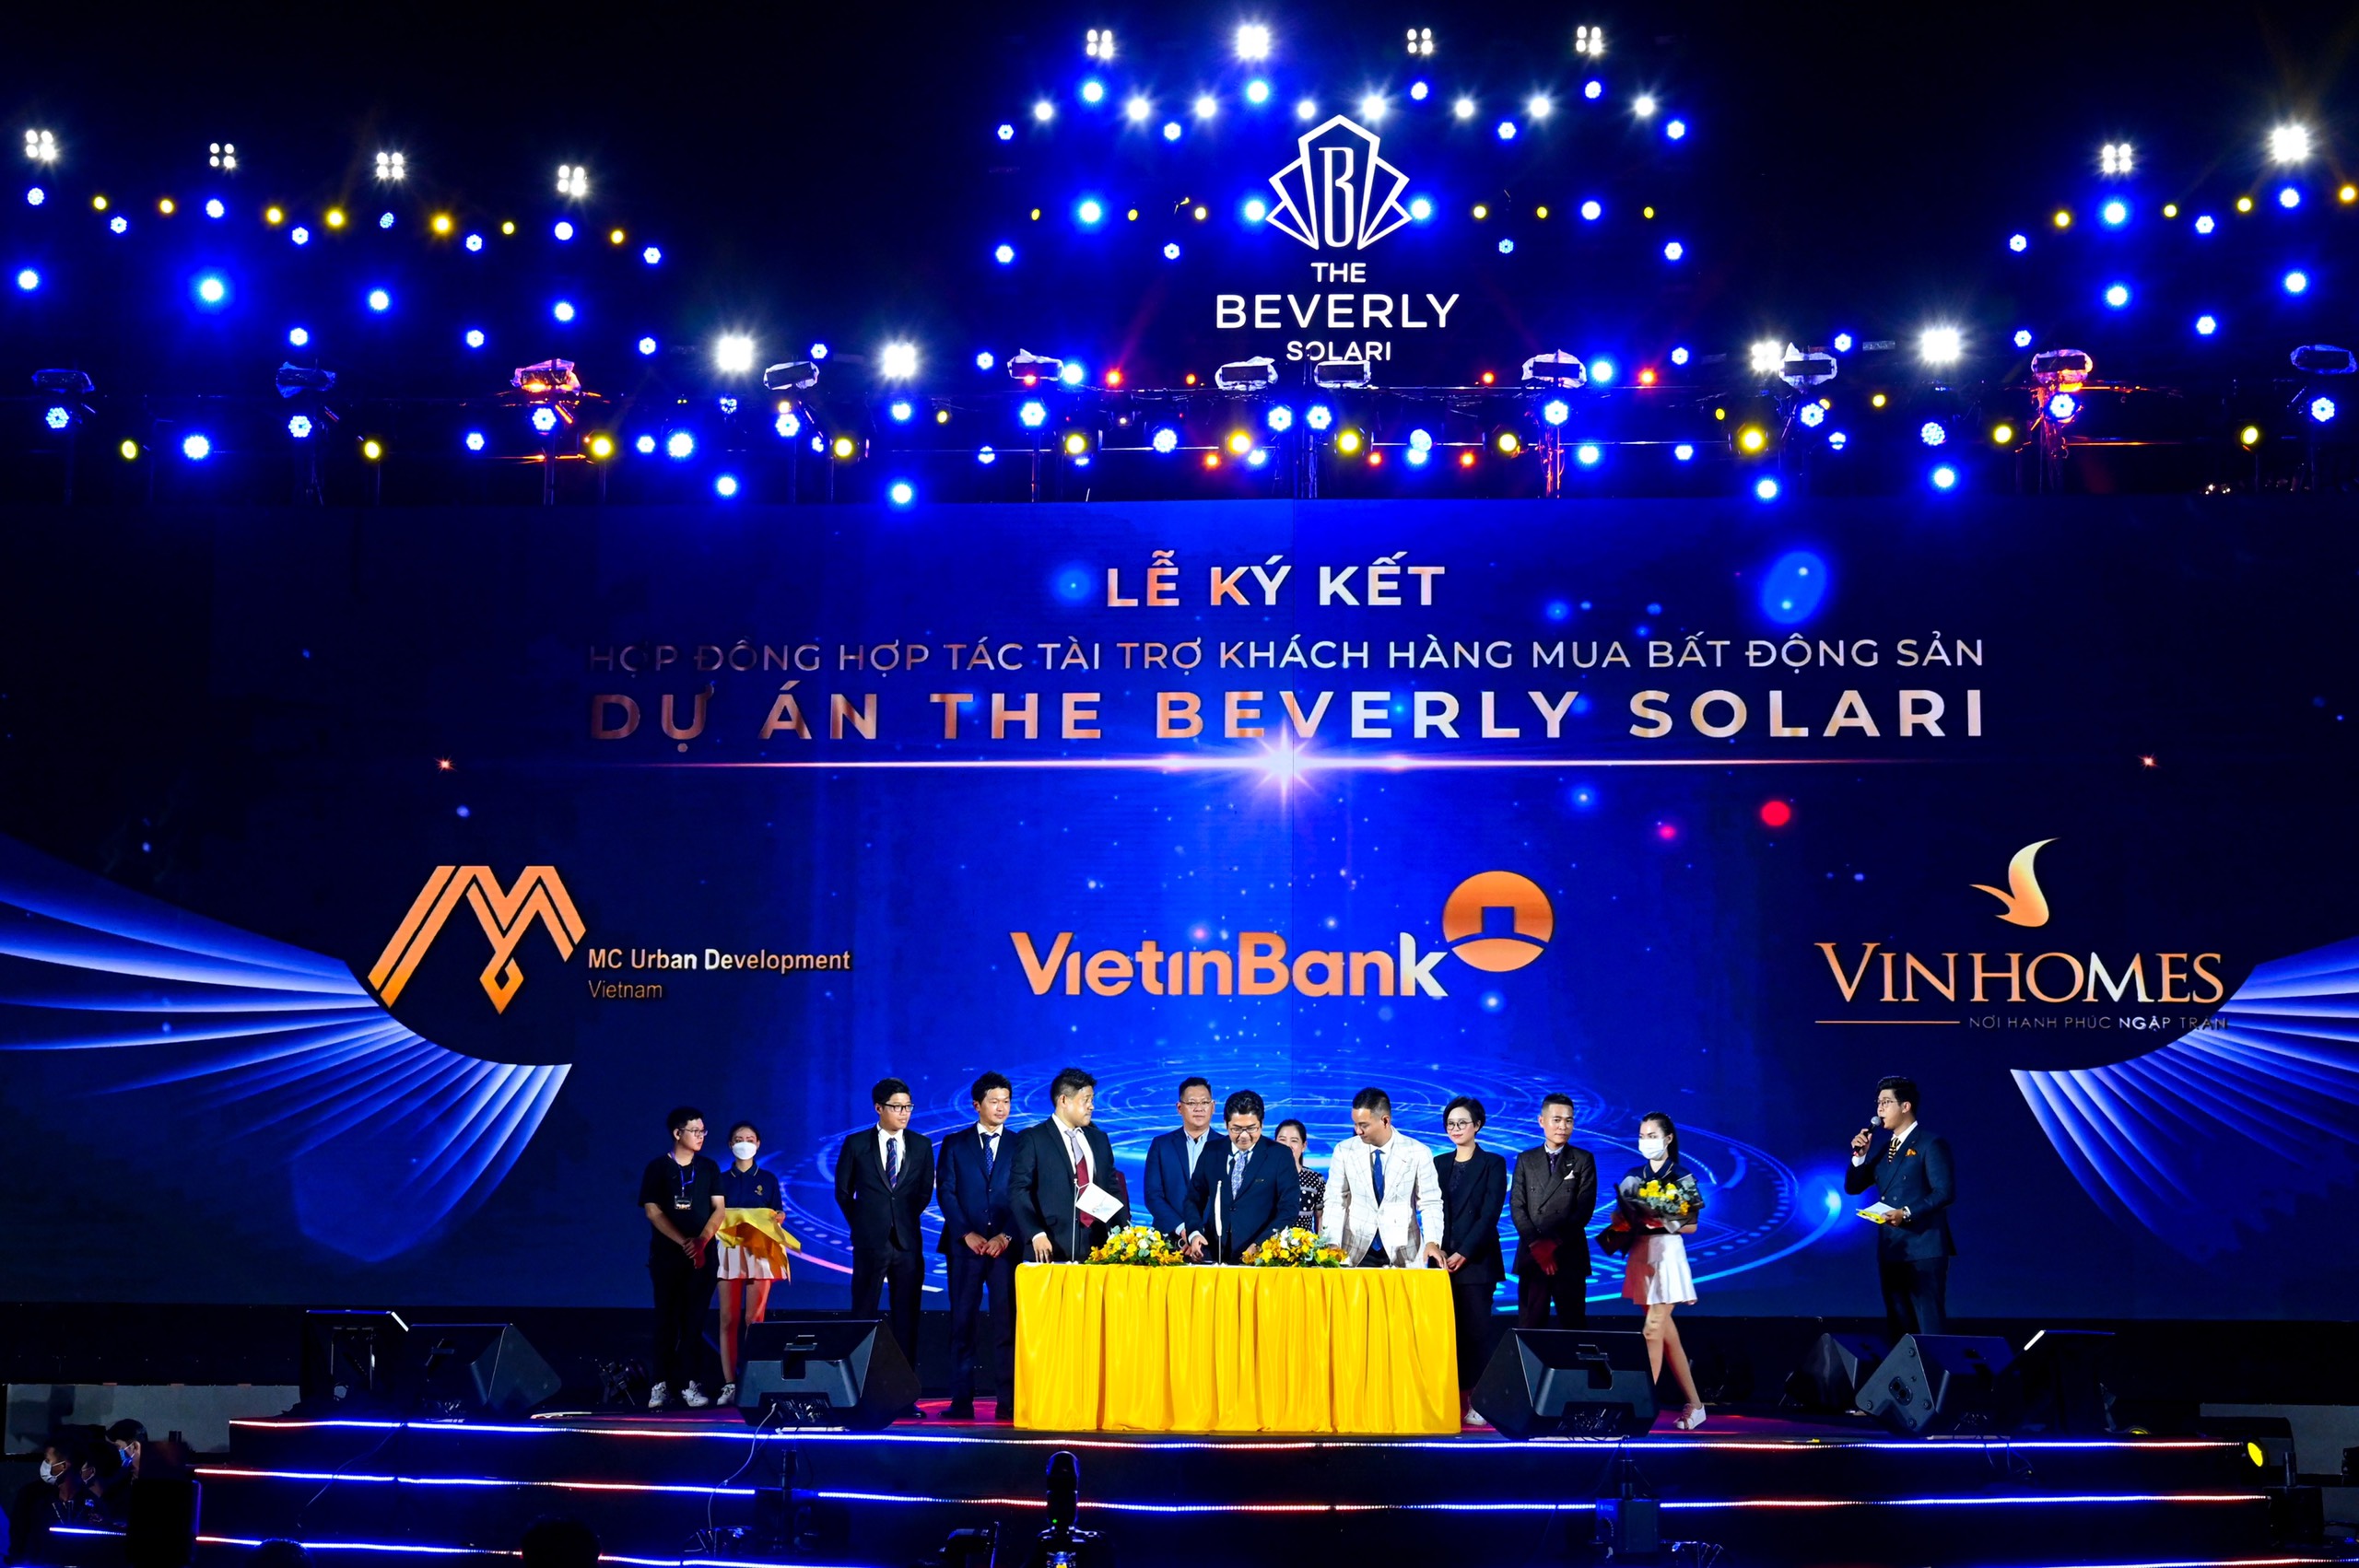 VietinBank là một trong những ngân hàng ký kết hợp tác với dự án The Beverly Solari